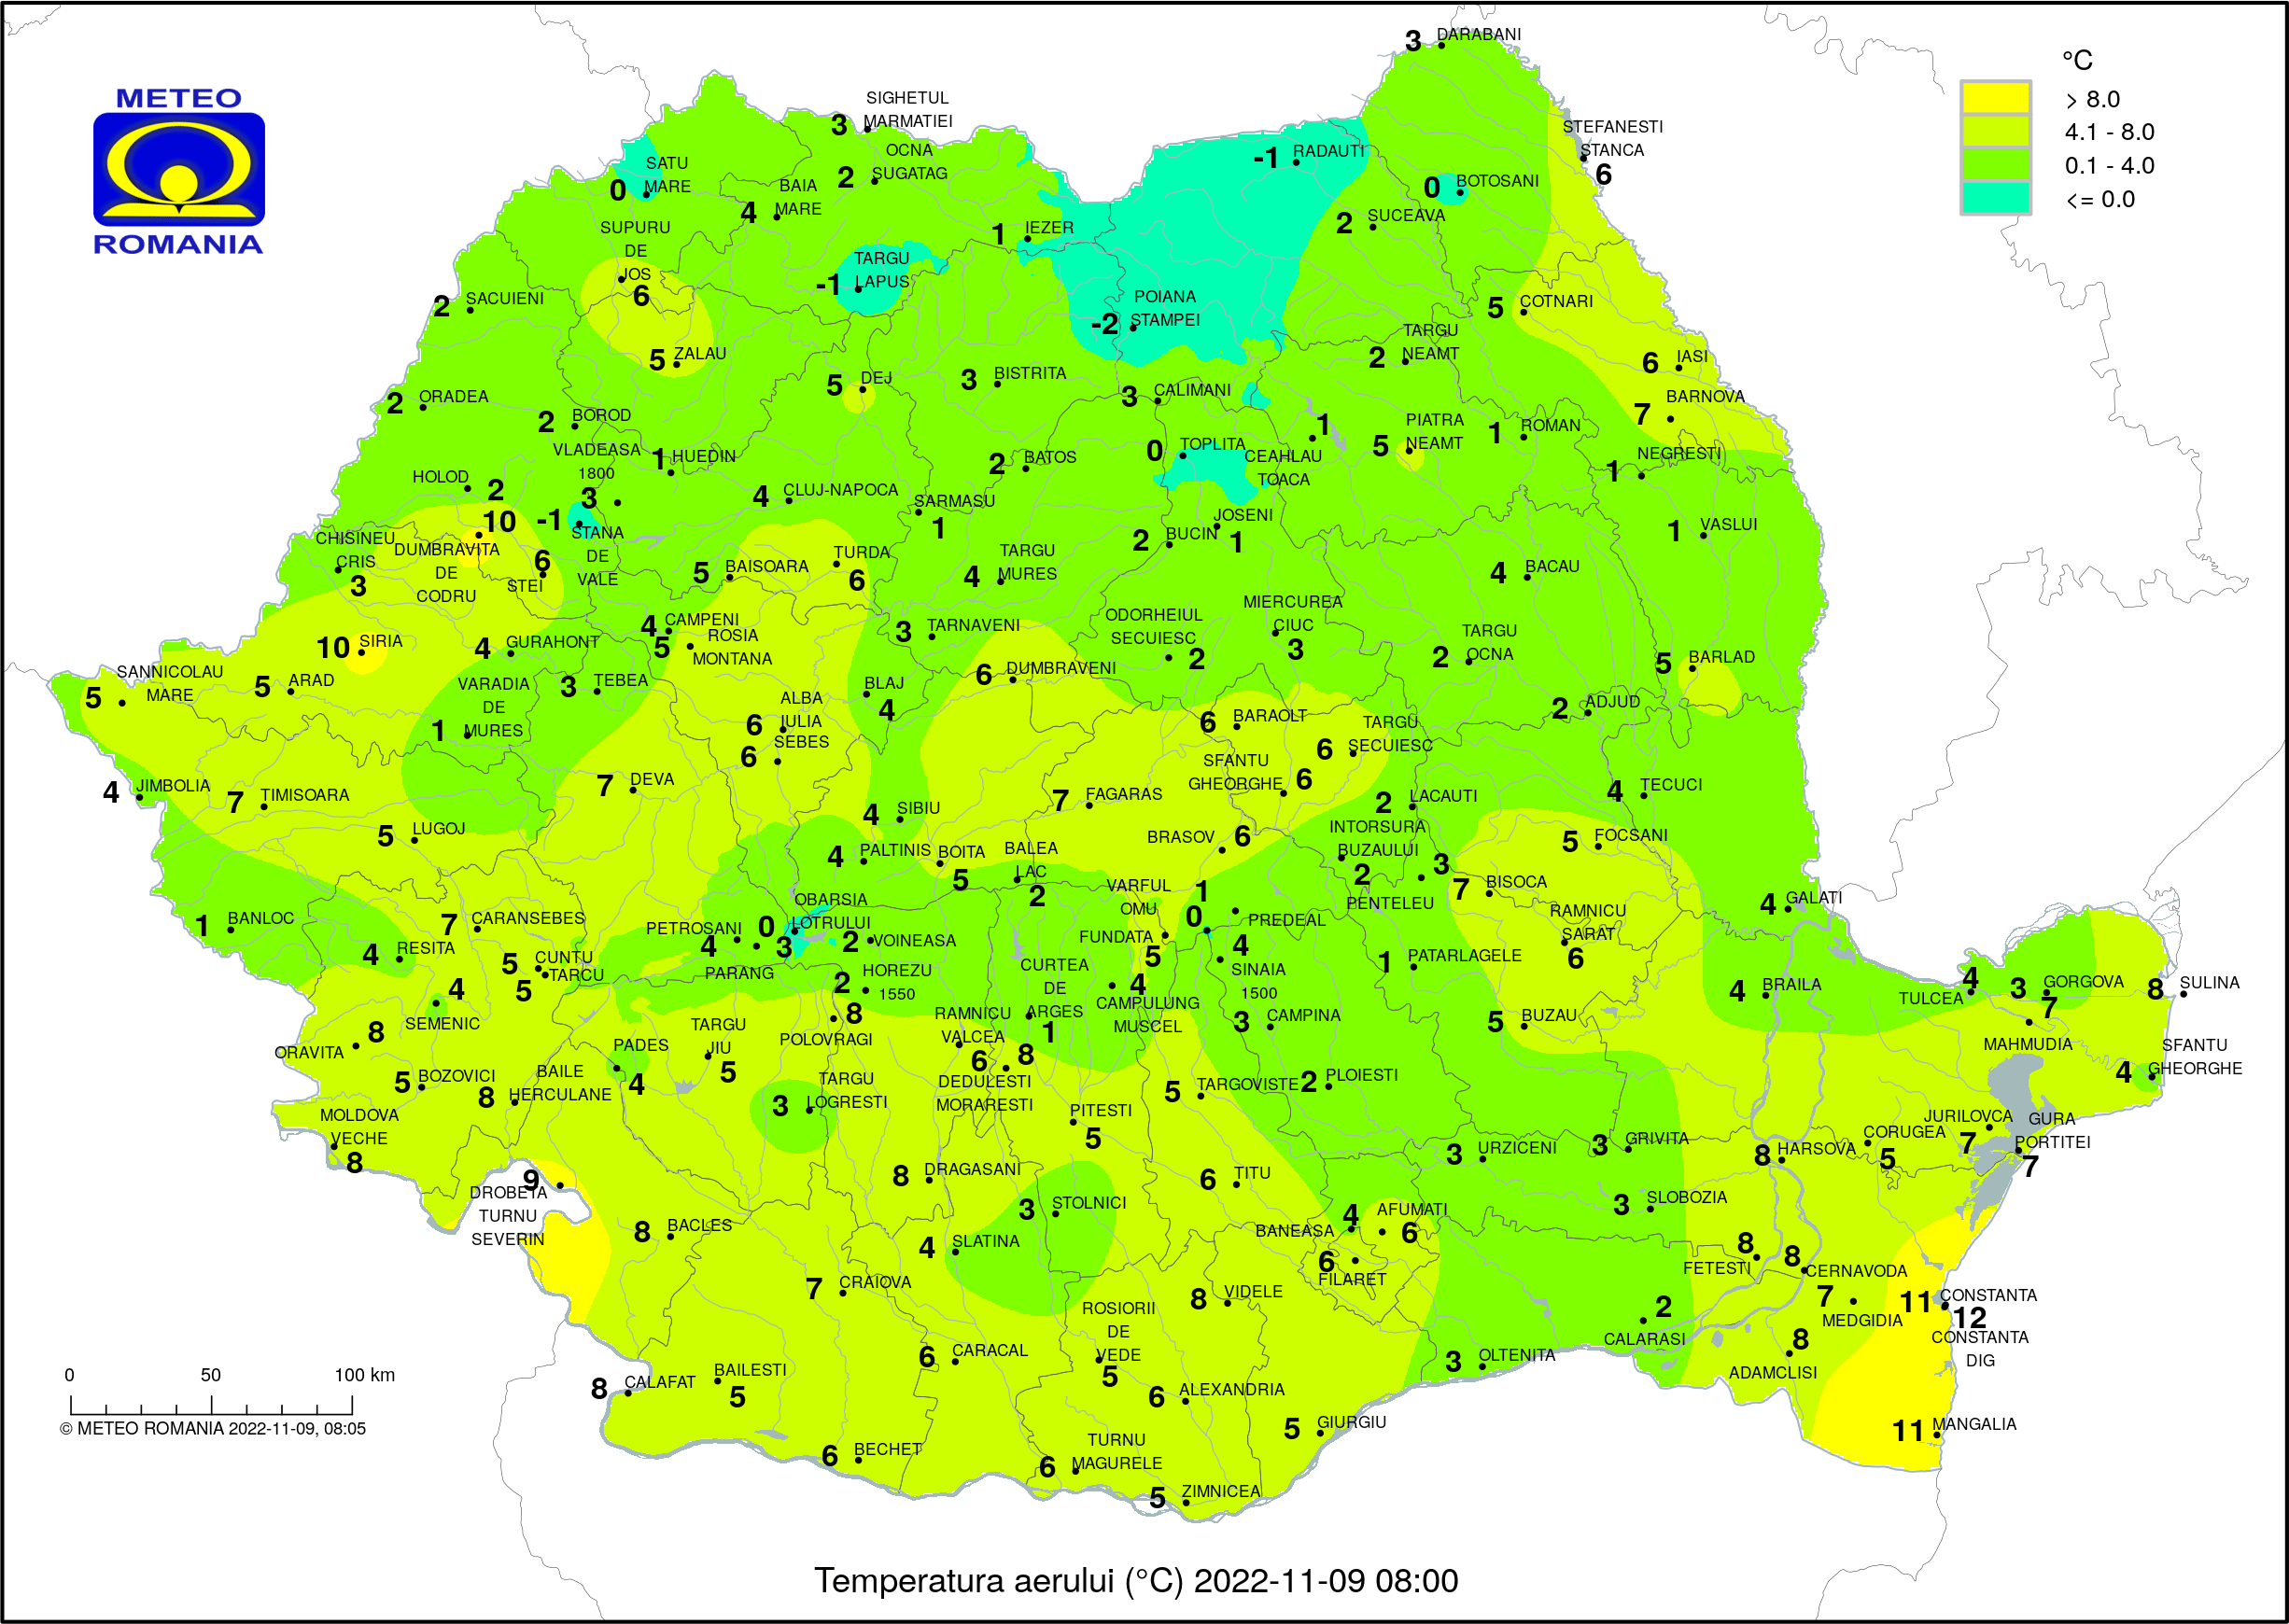 Temperaturile dimineții în România (ora 8) Temperaturi resimțite